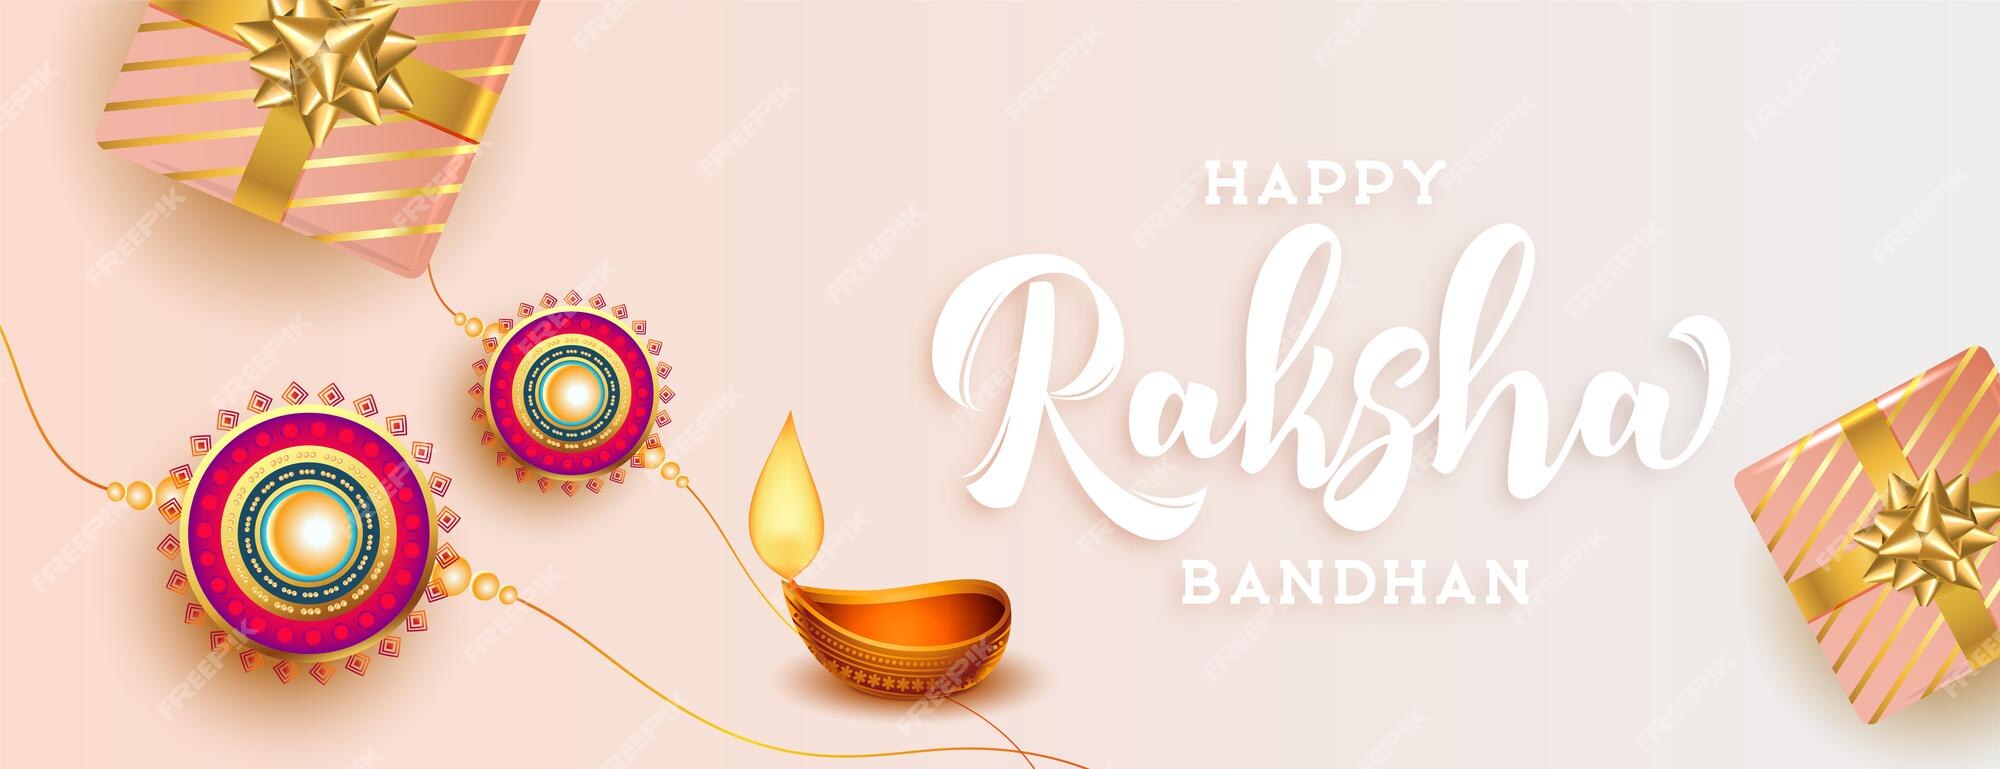 Free Vector | Happy raksha bandhan beautiful traditional banner design